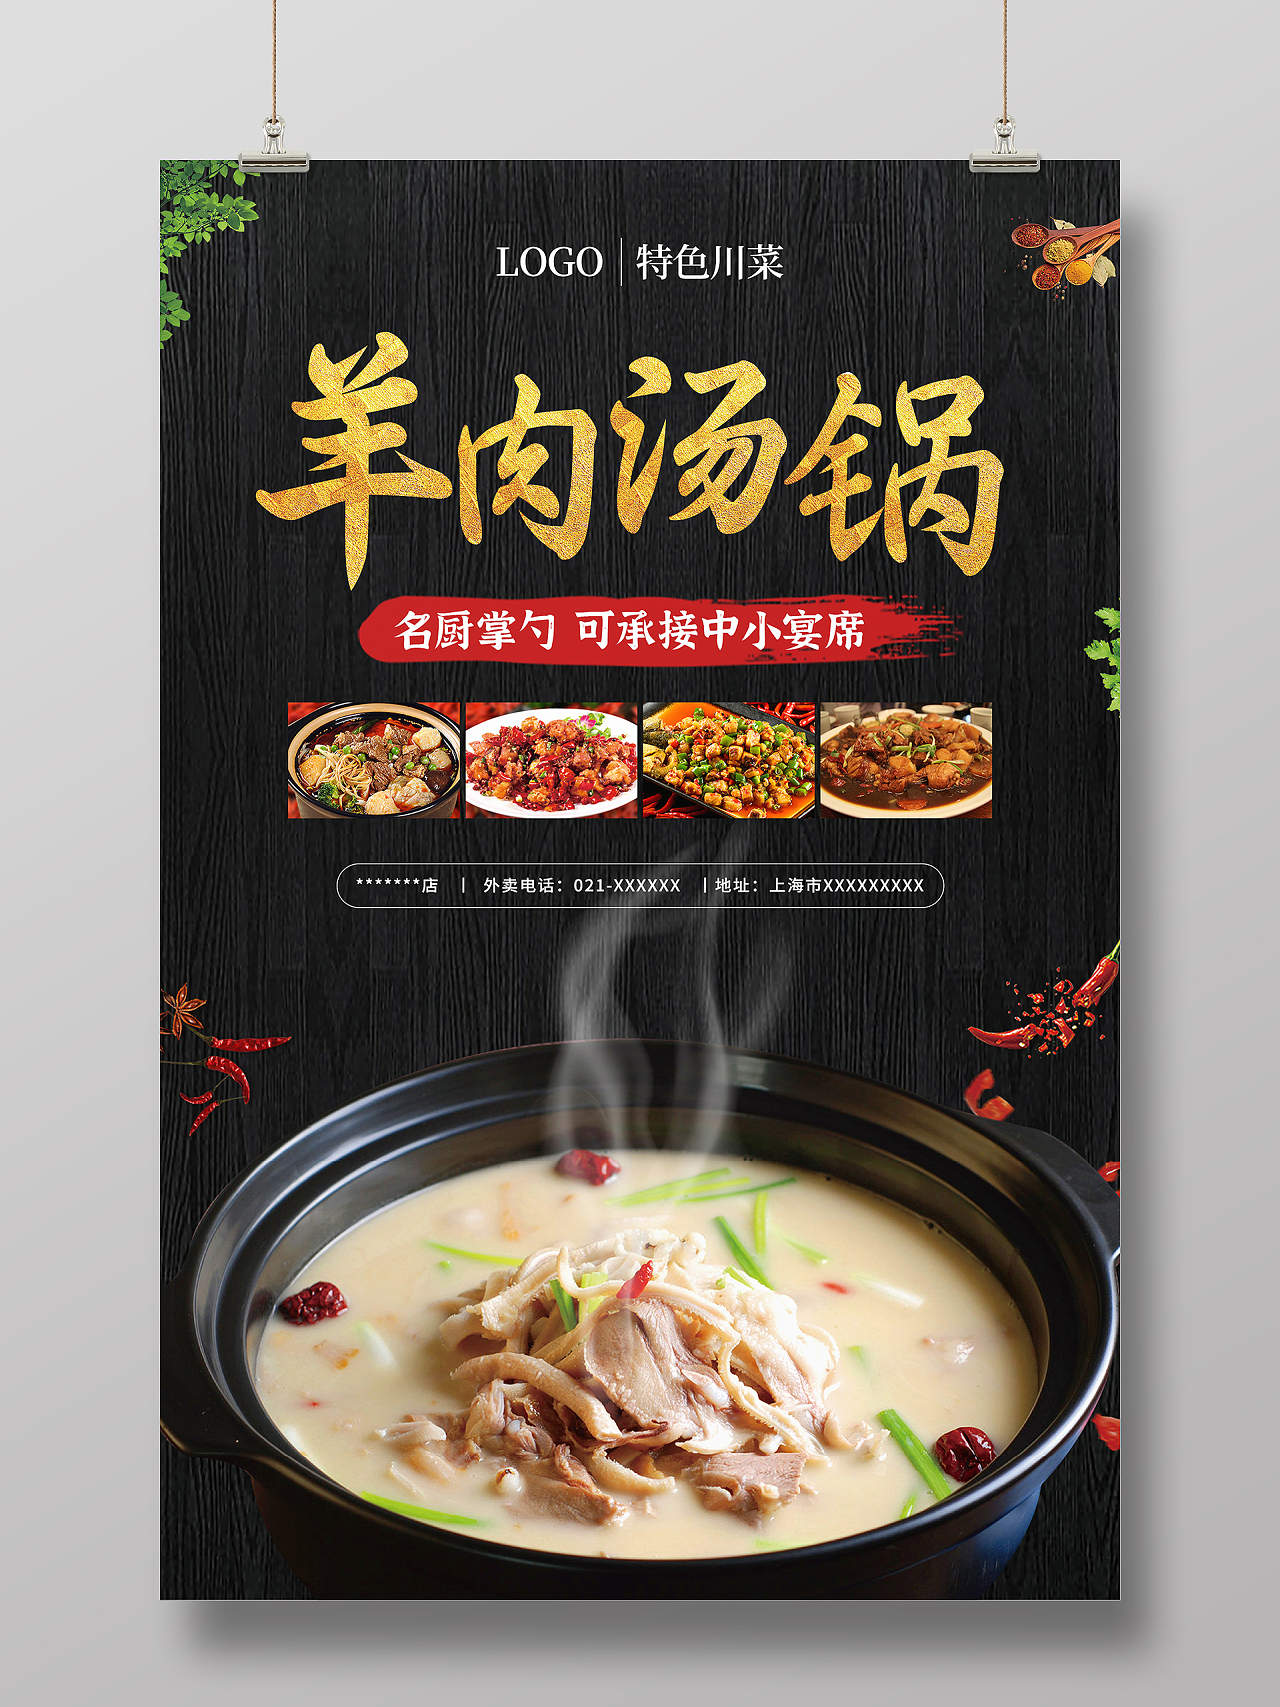 黑金色质感羊肉汤锅美食宣传海报羊肉汤锅展板